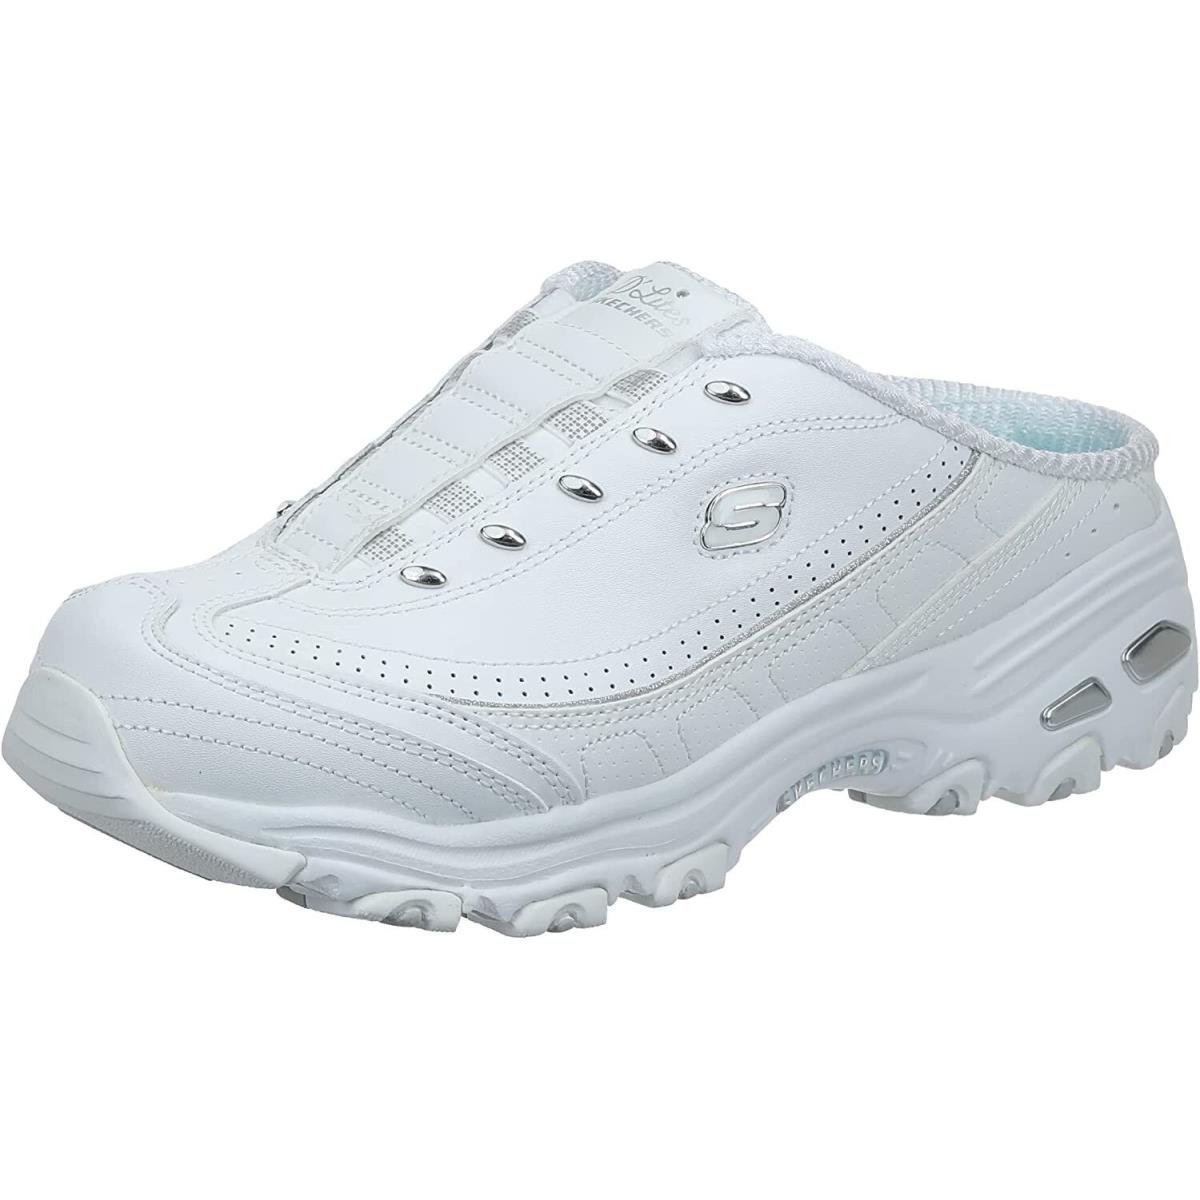 Skechers D`lites Women`s Comfort Slip-on Shoes Mule Memory Foam Sport Sneakers White/Silver